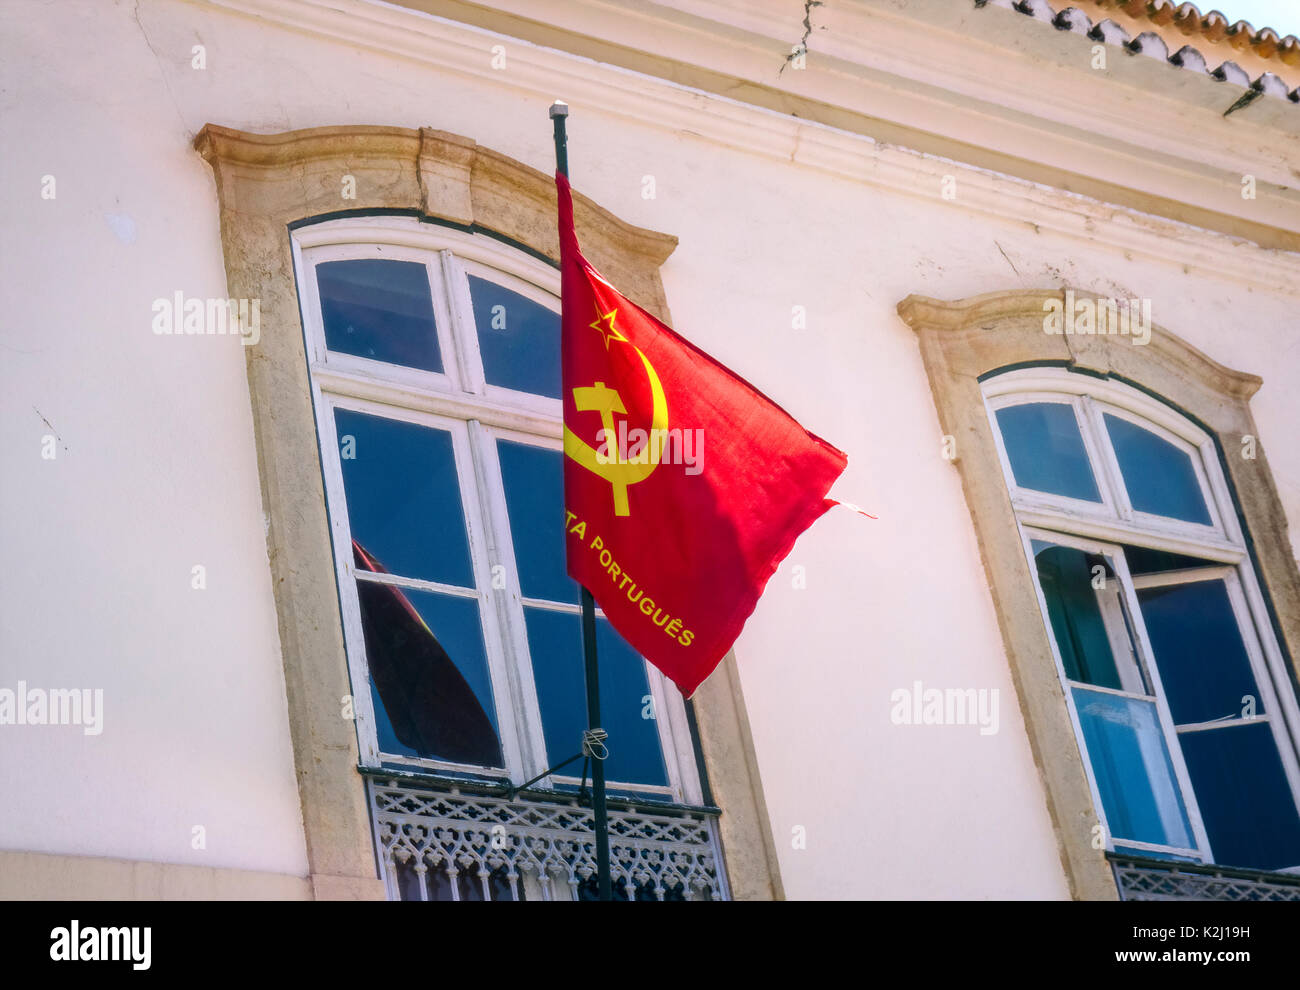 Drapeau de le parti communiste portugais (partido comunista português) sur un bâtiment à Faro, Portugal. Banque D'Images